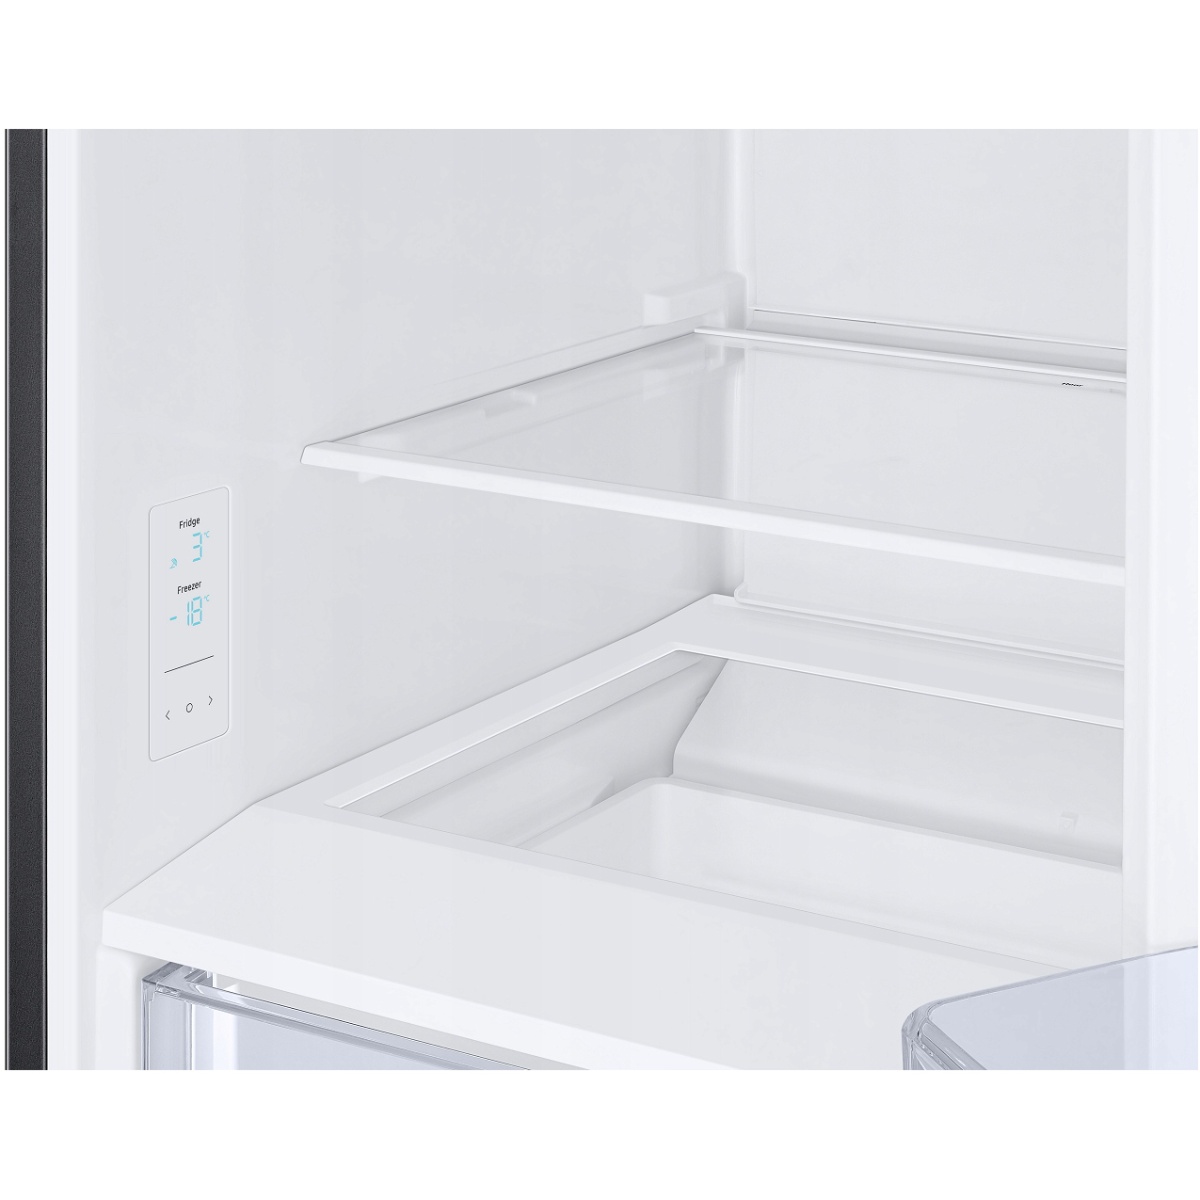 Холодильник Samsung RB34T600EBN (Объем - 344 л / Высота - 185,3 см / A+ / Чёрный / NoFrost / Space Max / Multi-Flow / Digital Inverter)